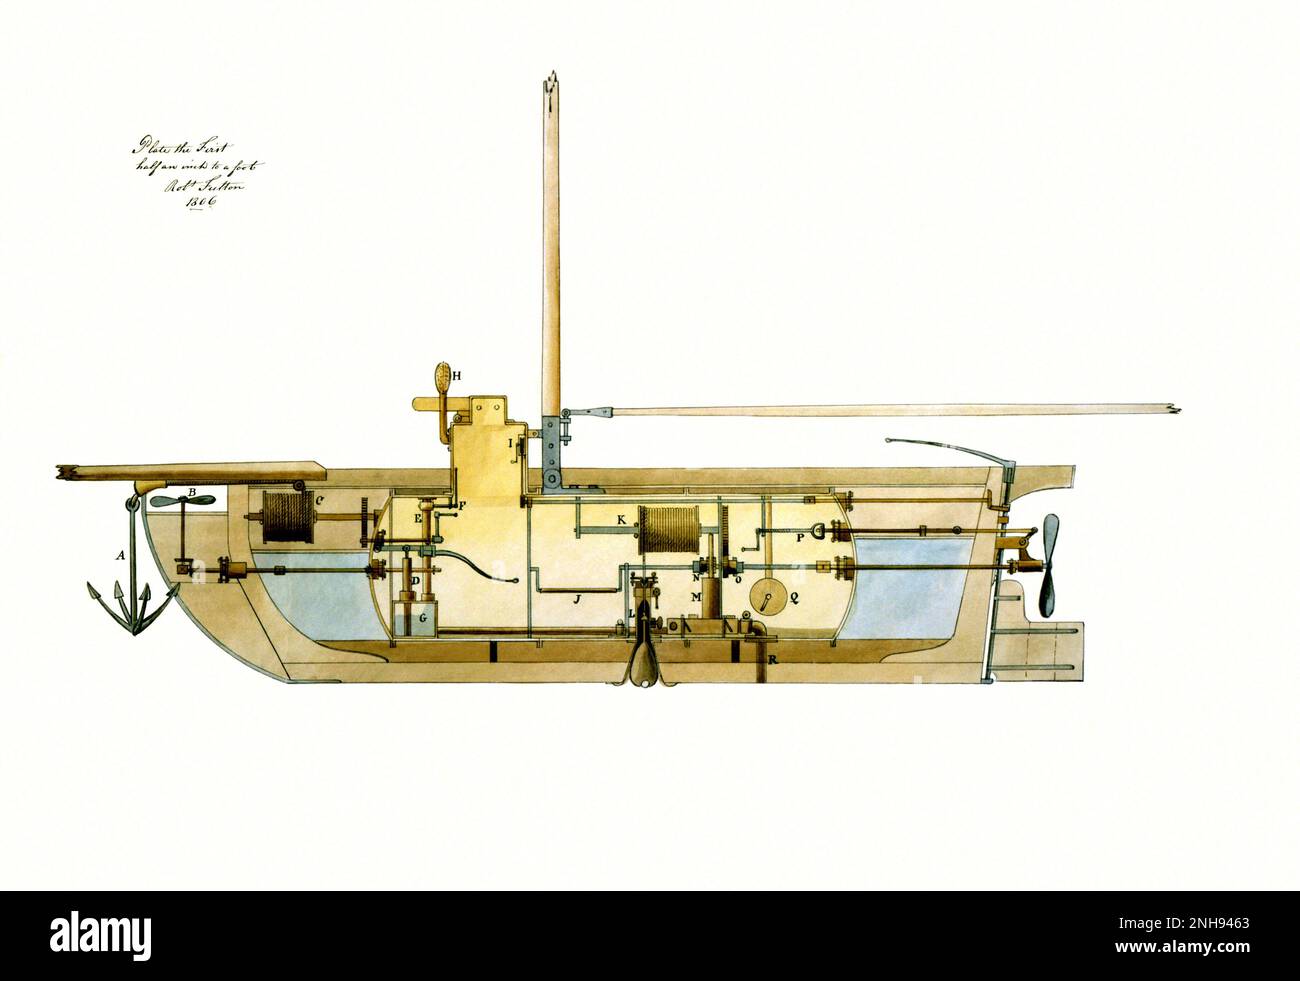 U-Boot, U-Boot-Bomben und Angriffsmodus für die US-Regierung von Robert Fulton, 1806. U-Boot, Längsschnitt. Robert Fulton (1765 - 1815) war ein amerikanischer Ingenieur und Erfinder. Während er in Frankreich lebte, entwarf Fulton zwischen 1793 und 97 das erste funktionierende muskelgetriebene U-Boot, Nautilus. Am 3. Juli 1801, in Le Havre, nahm Fulton die Nautilus in die damals bemerkenswerte Tiefe von 25 Fuß. Stockfoto